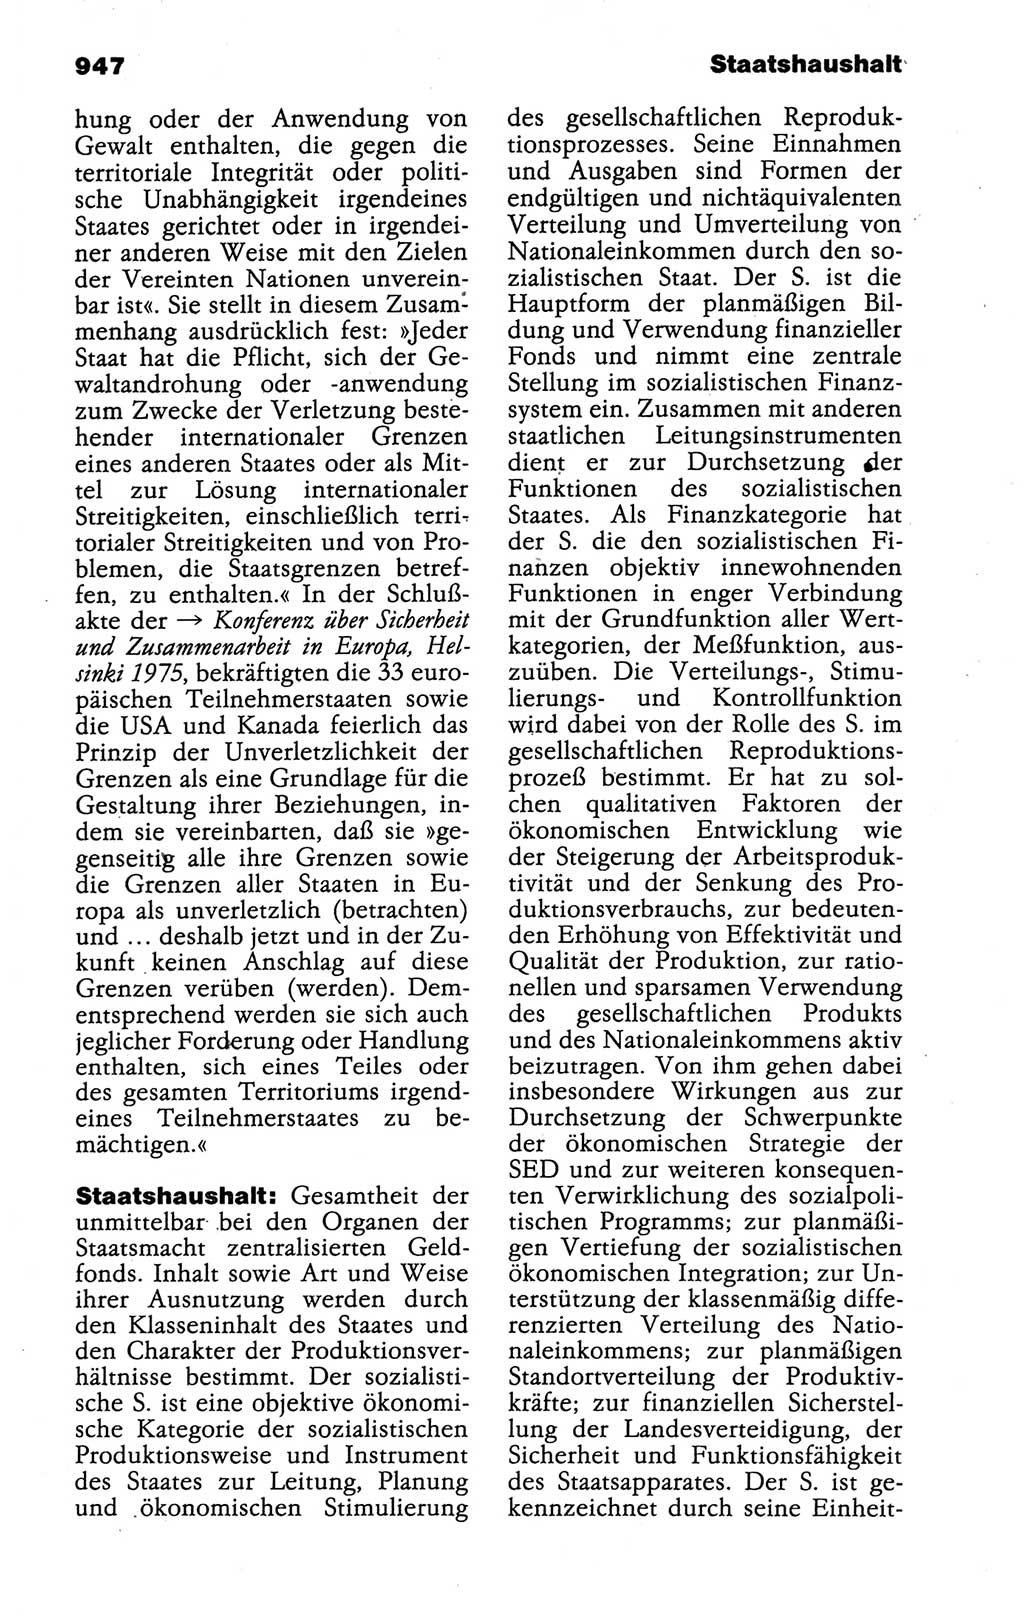 Kleines politisches Wörterbuch [Deutsche Demokratische Republik (DDR)] 1988, Seite 947 (Kl. pol. Wb. DDR 1988, S. 947)